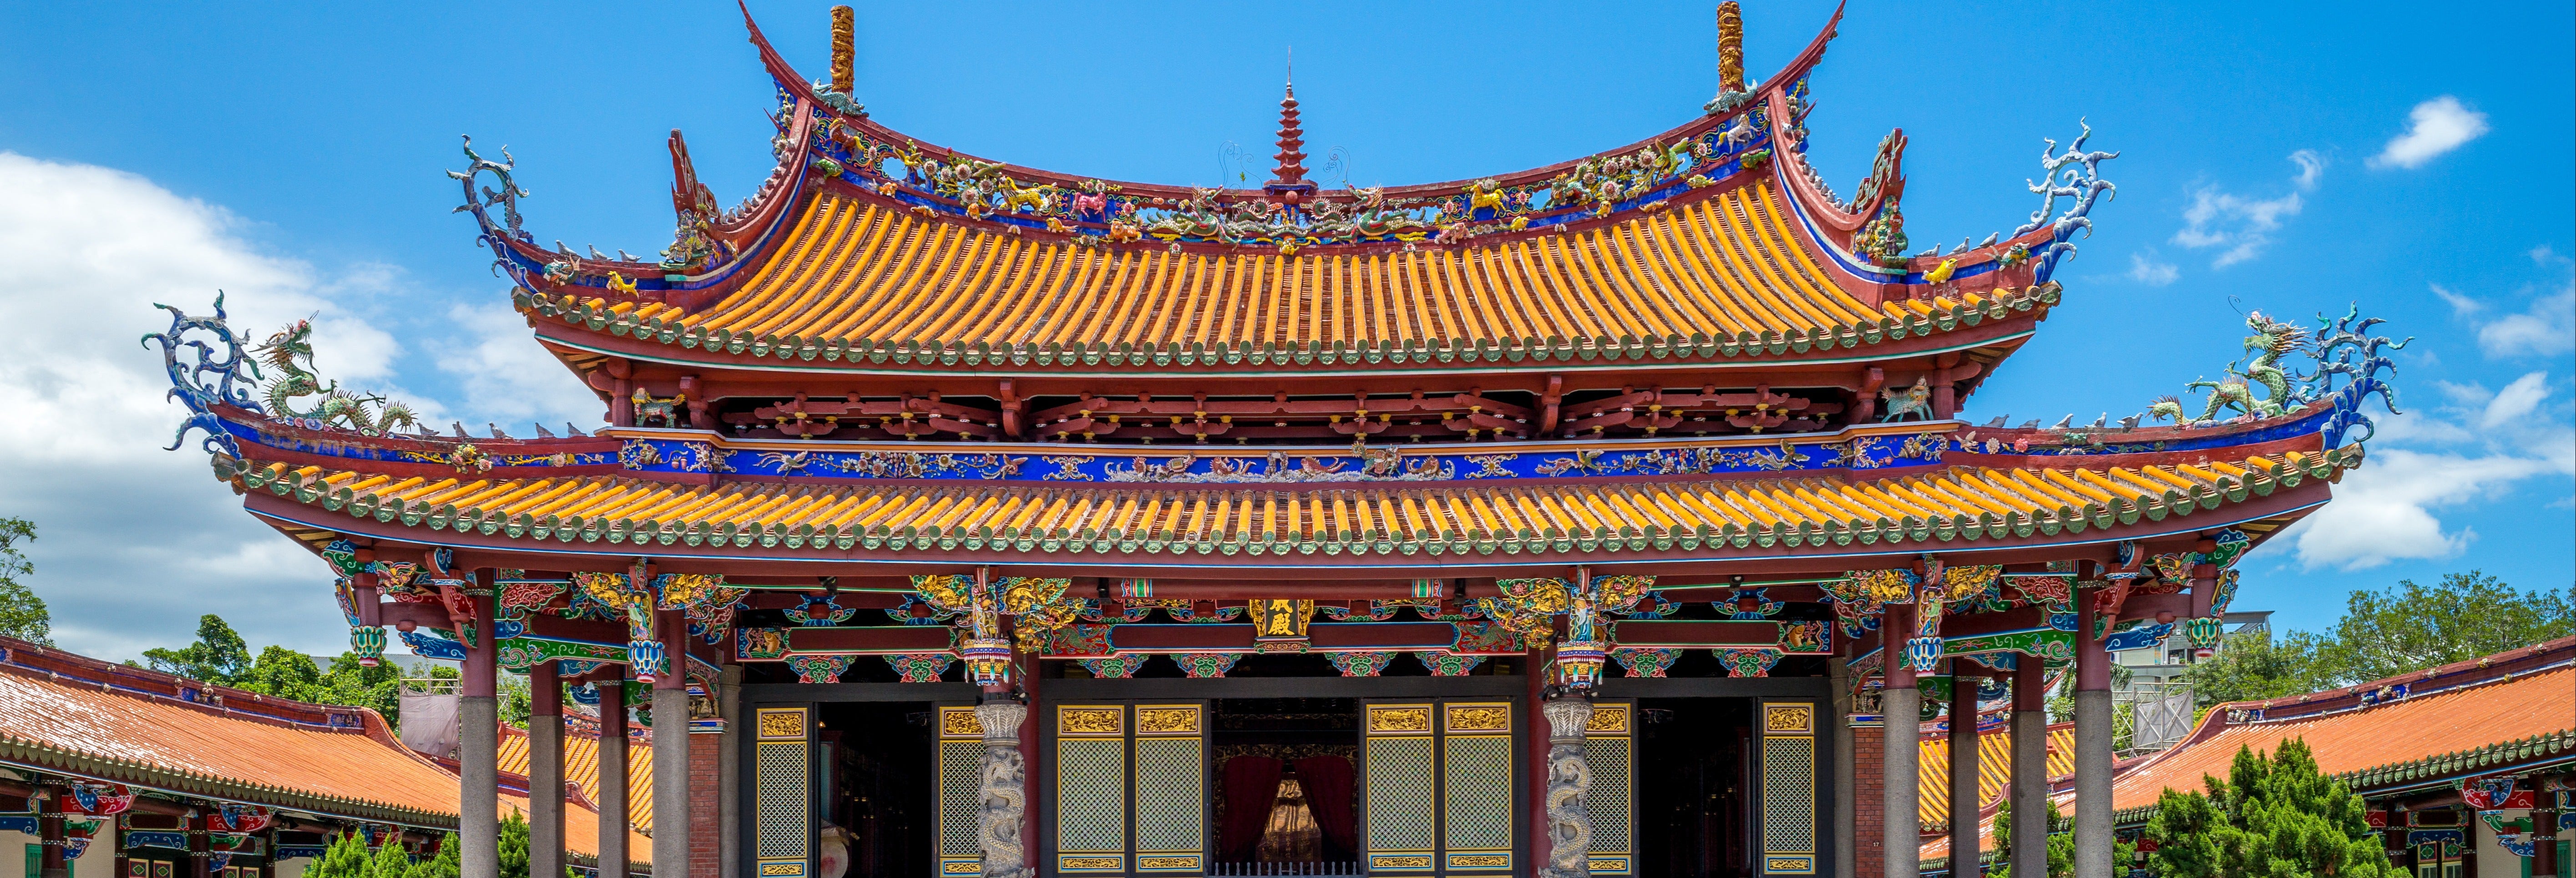 Templo de Confúcio, Parque Beihai e Museu da Capital